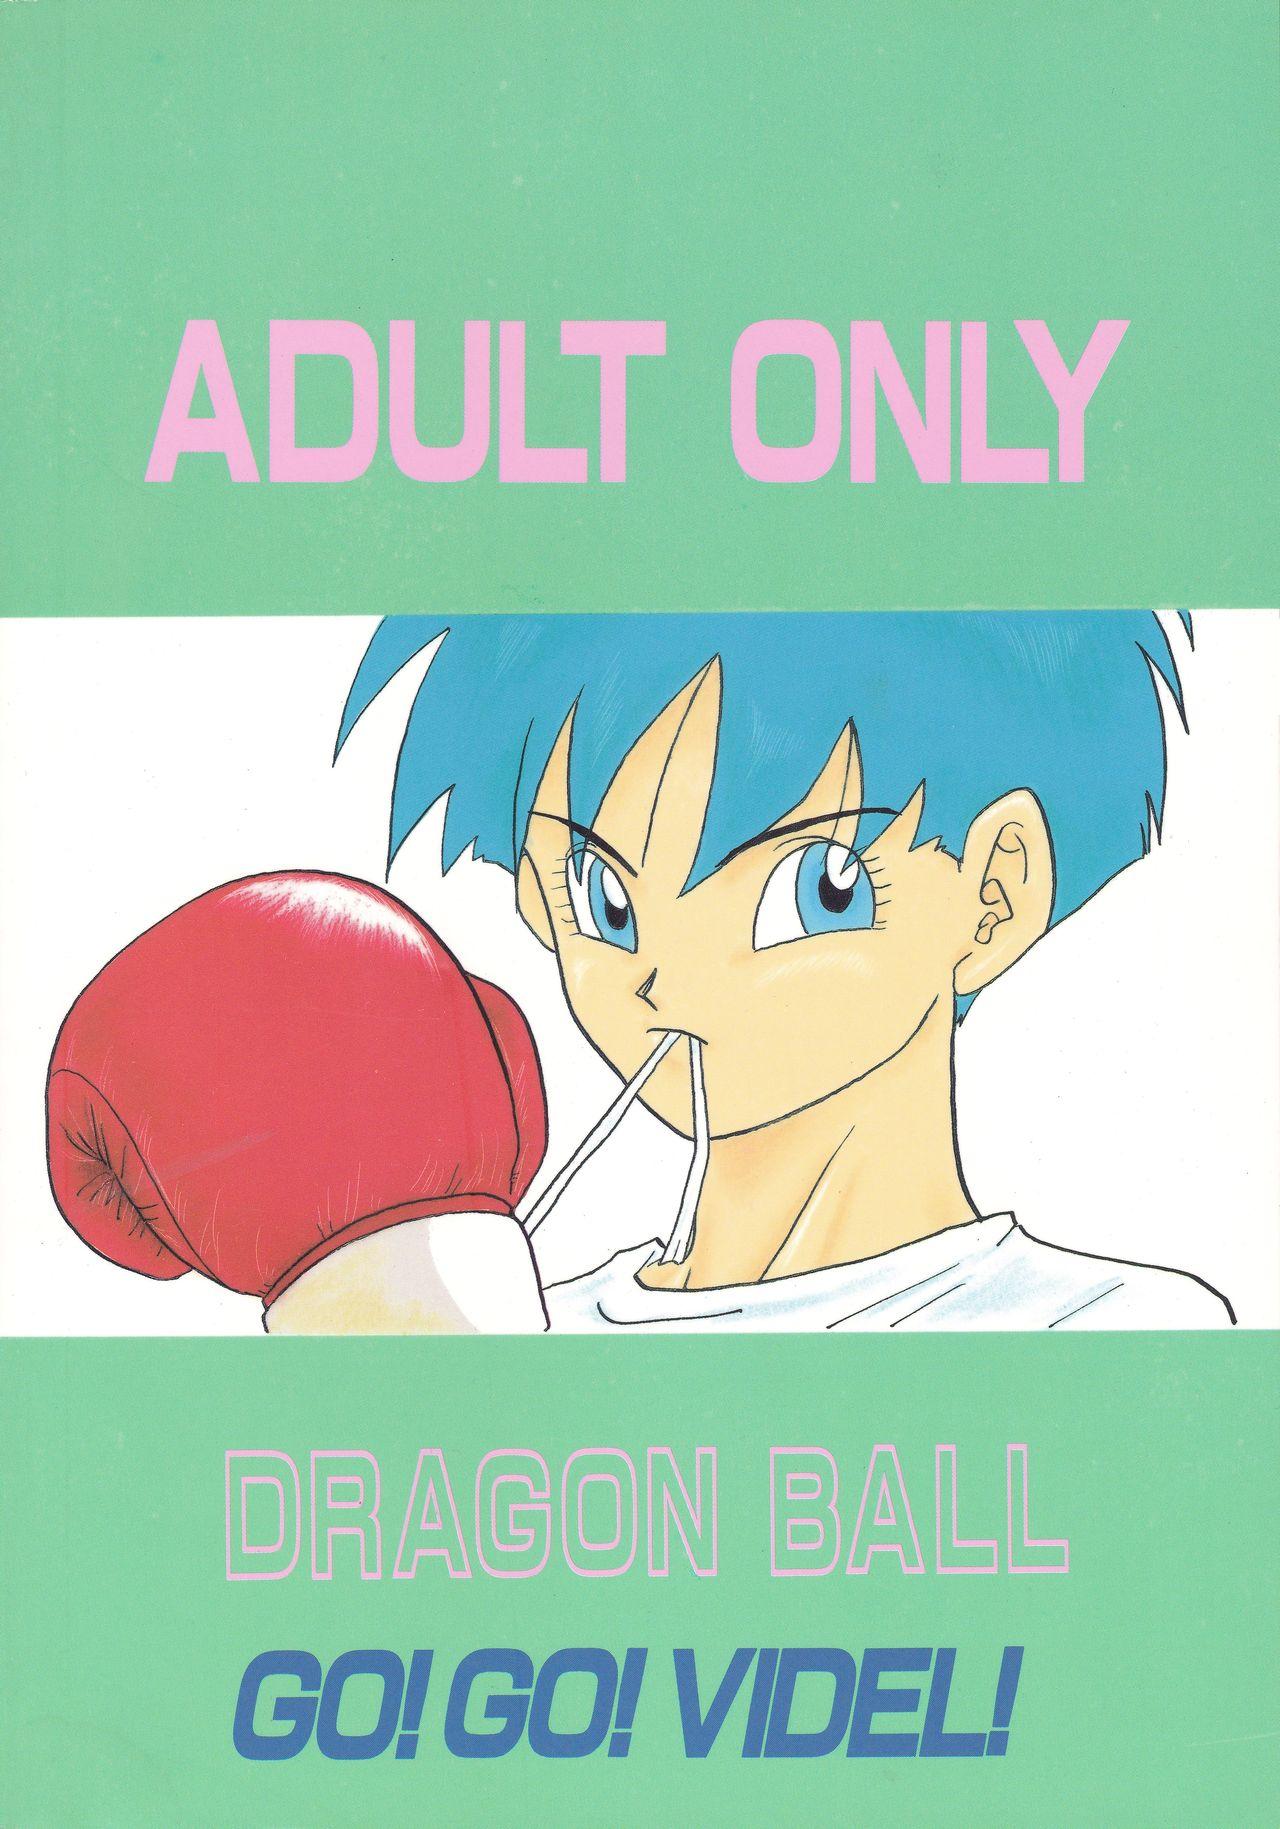 Amador Y - Dragon ball z Bj - Page 51